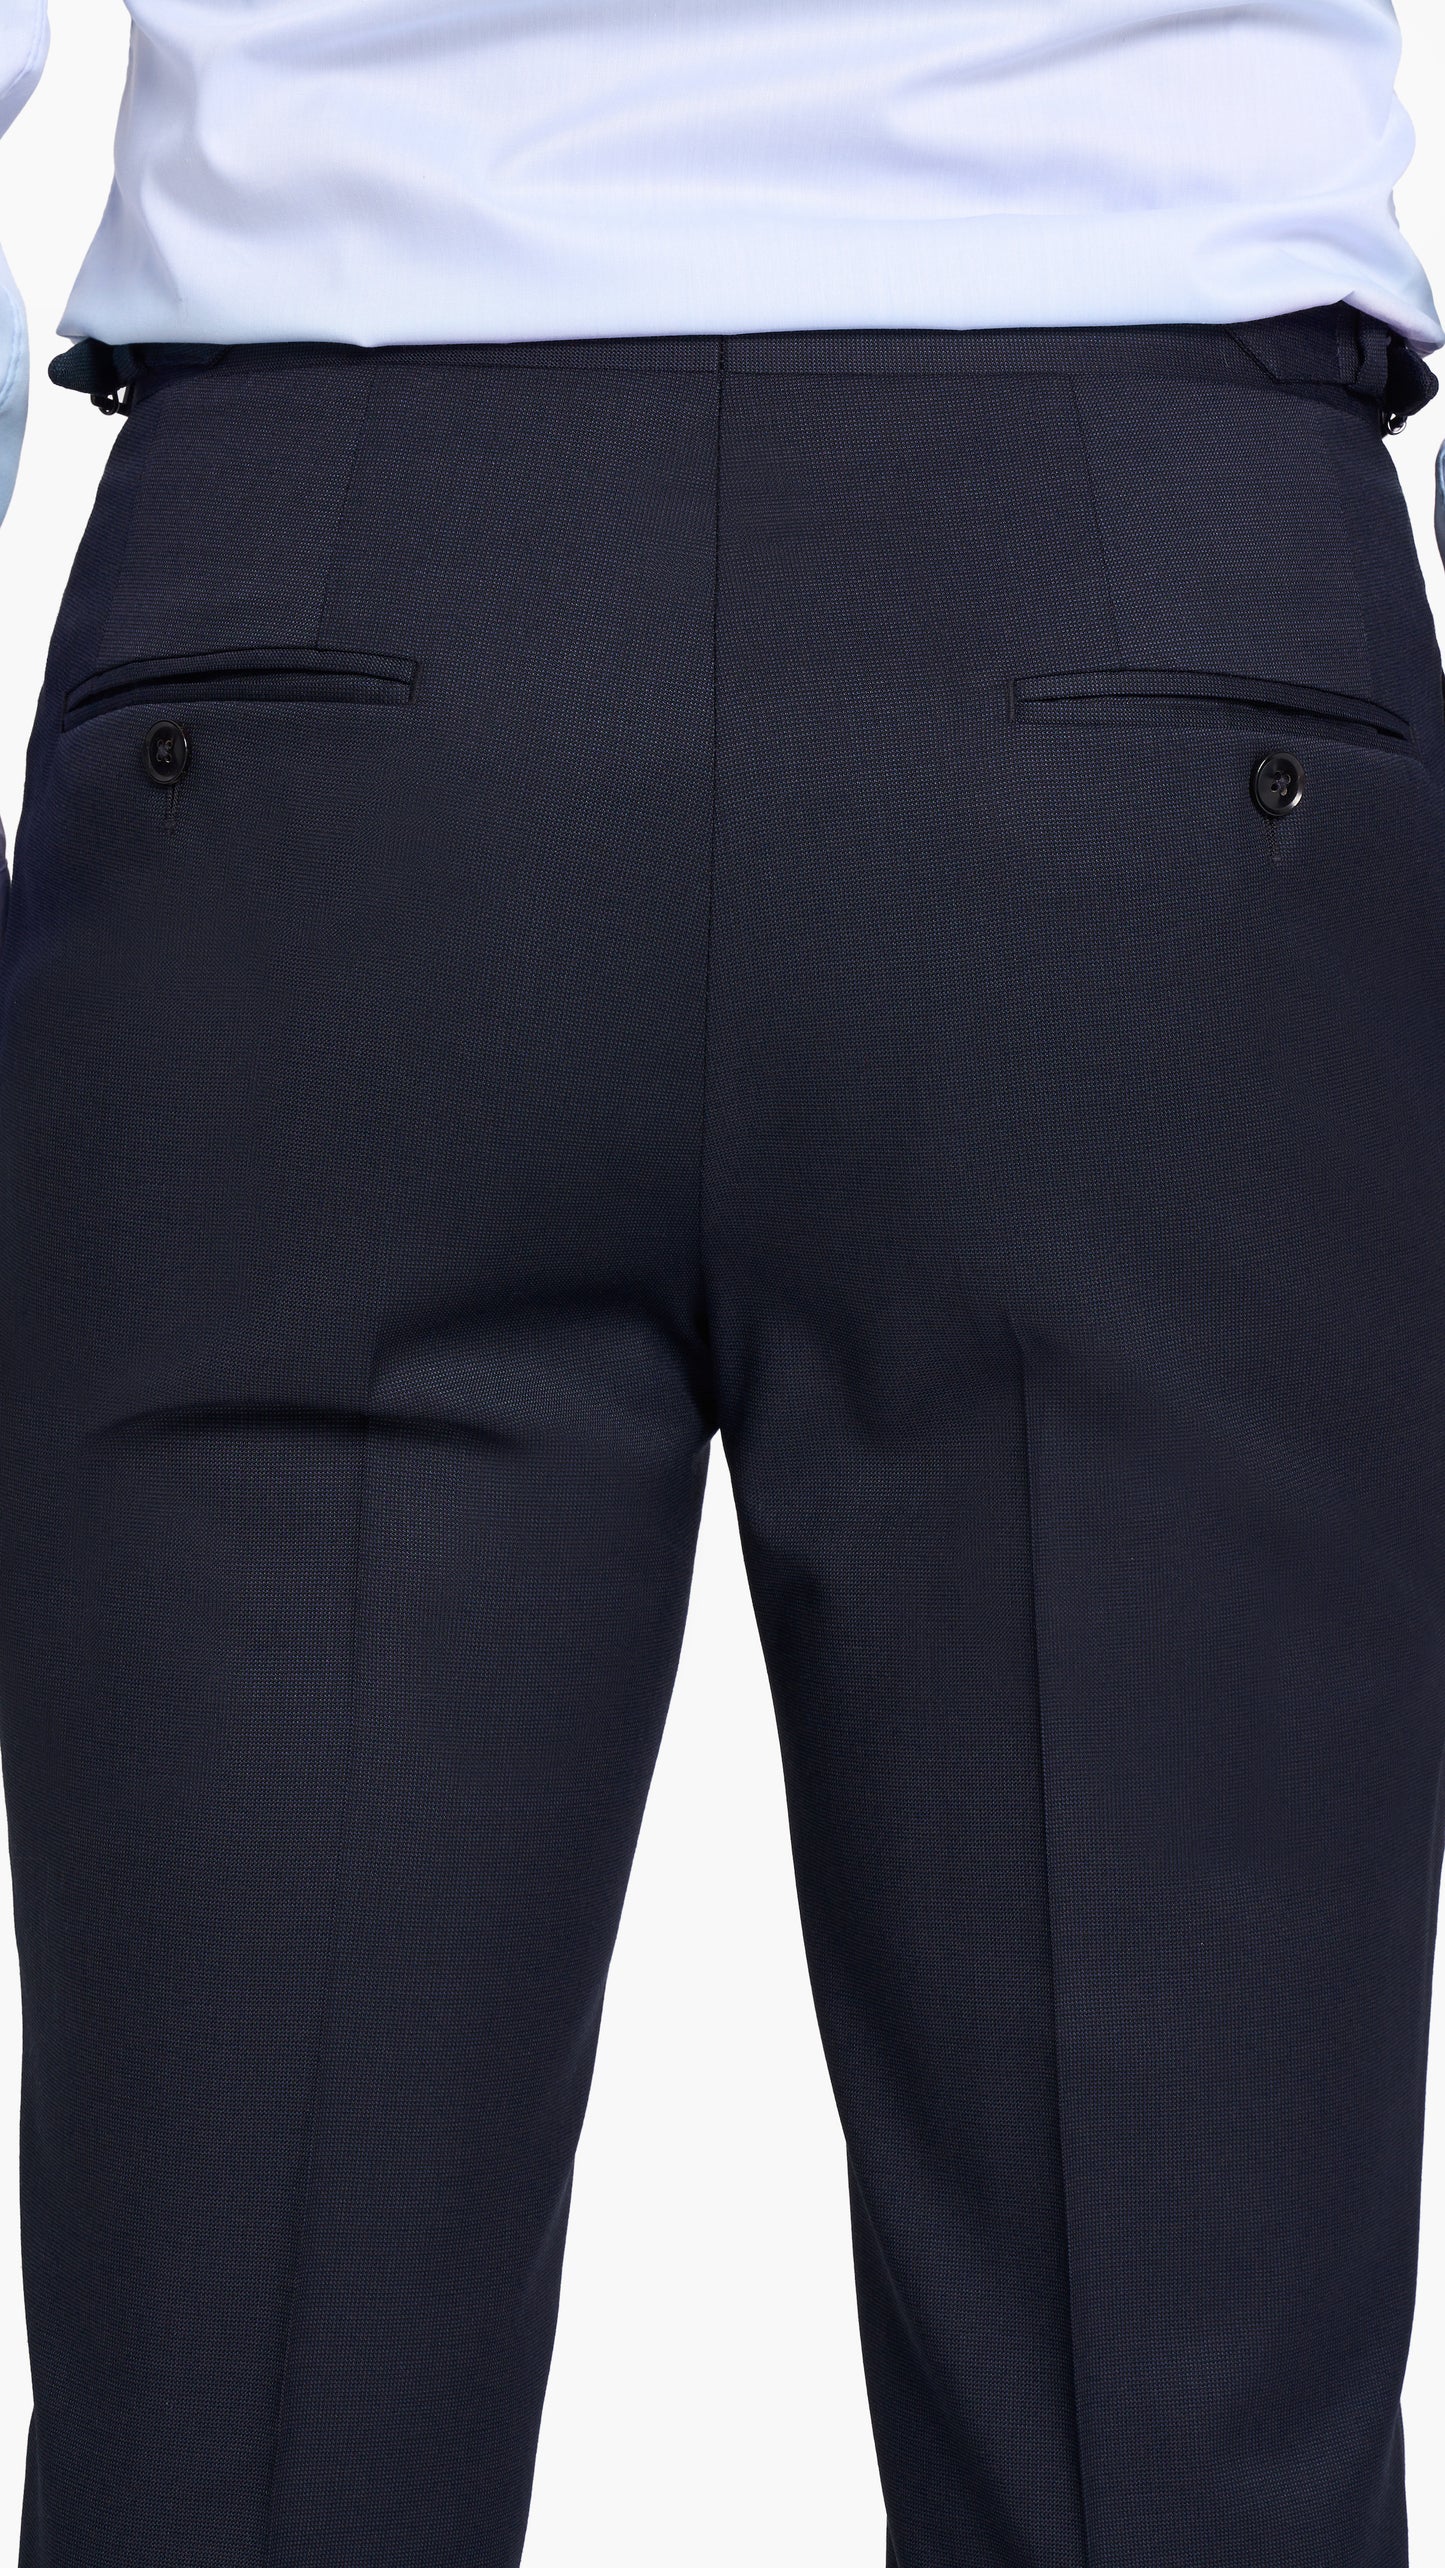 ES Essentials Navy Pinpoint Custom Trouser